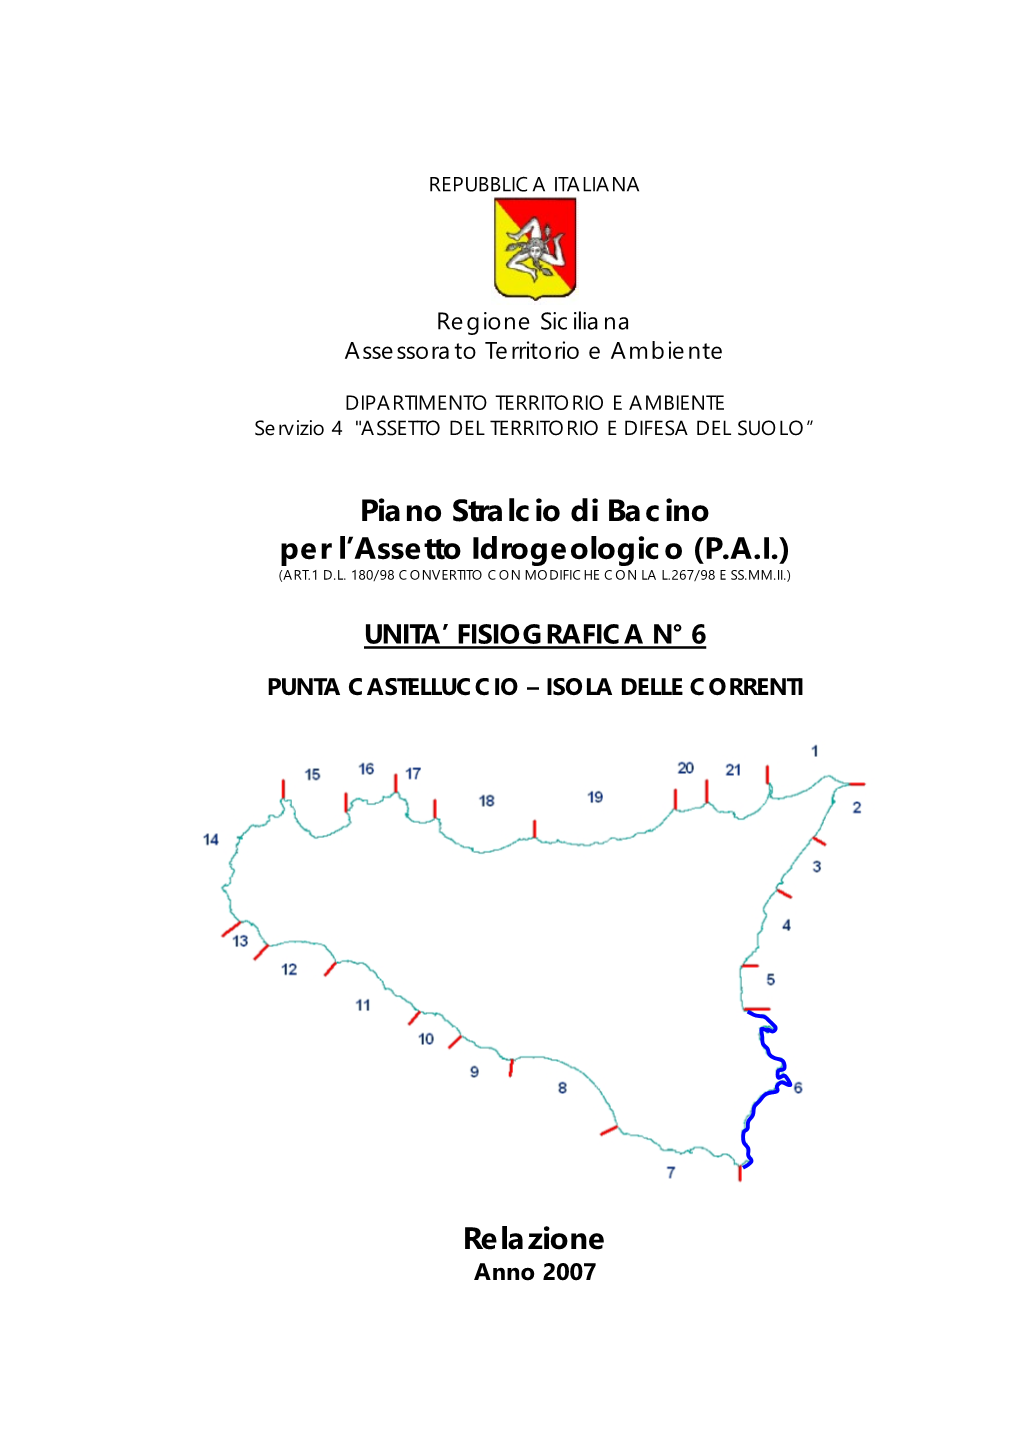 Piano Stralcio Di Bacino Per L'assetto Idrogeologico (P.A.I.) Relazione